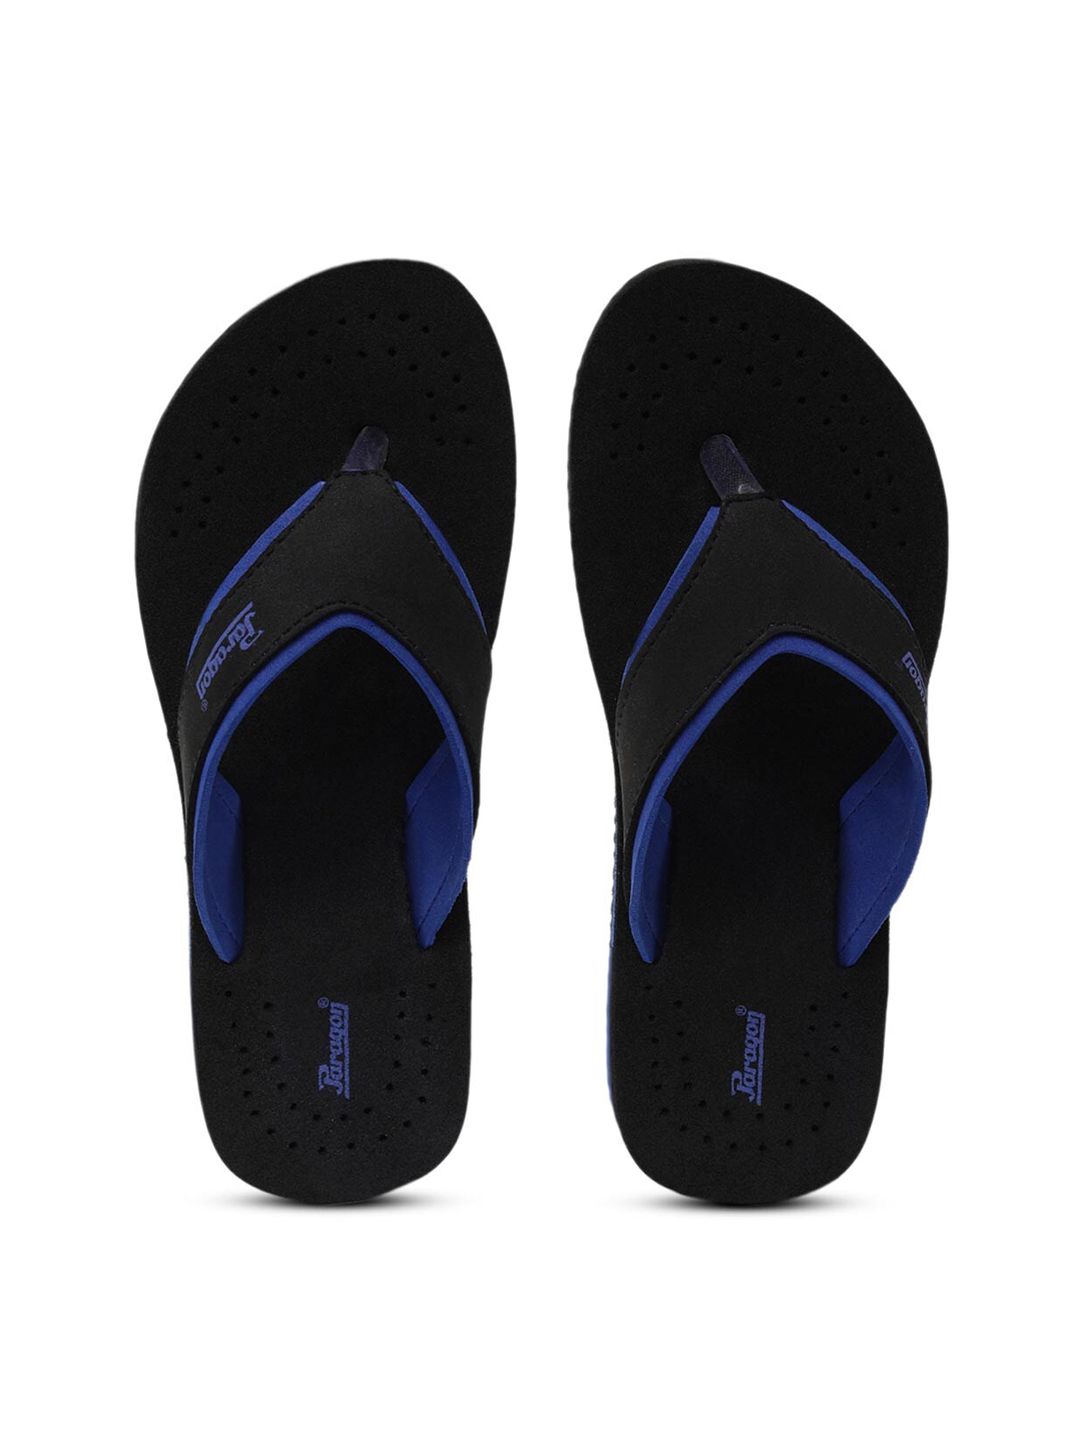 Paragon Women Black & Navy Blue Thong Flip-Flops Price in India